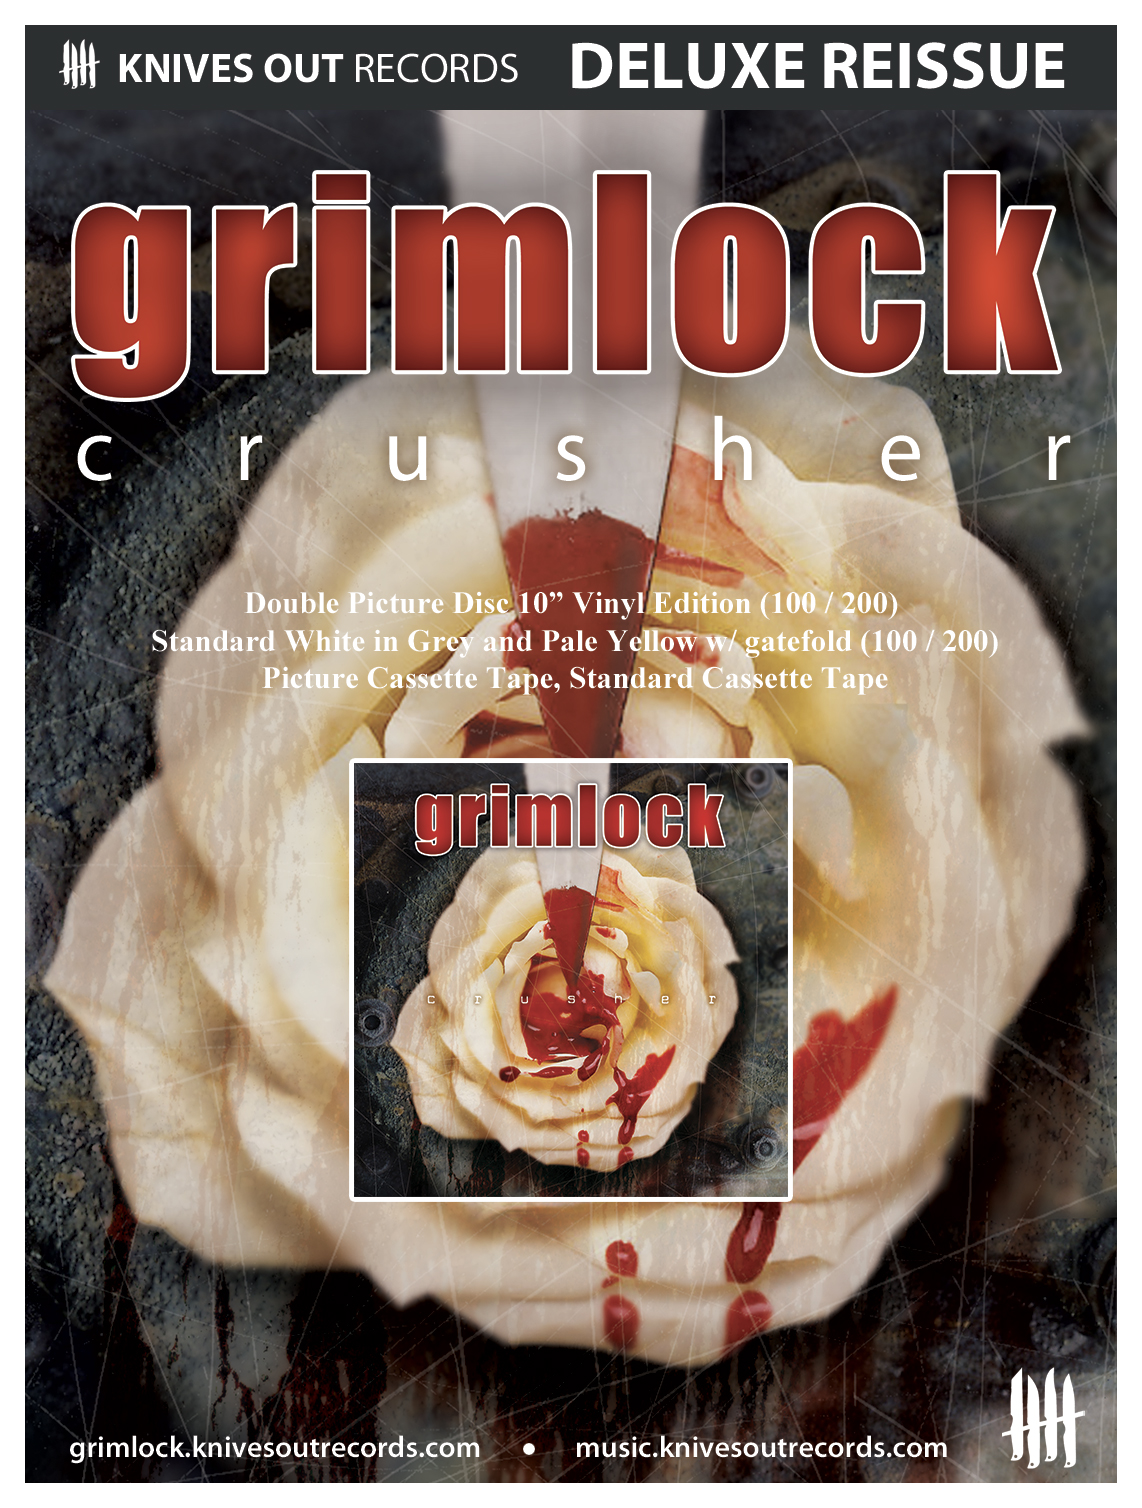 GRIMLOCK "Crusher" Deluxe reissue